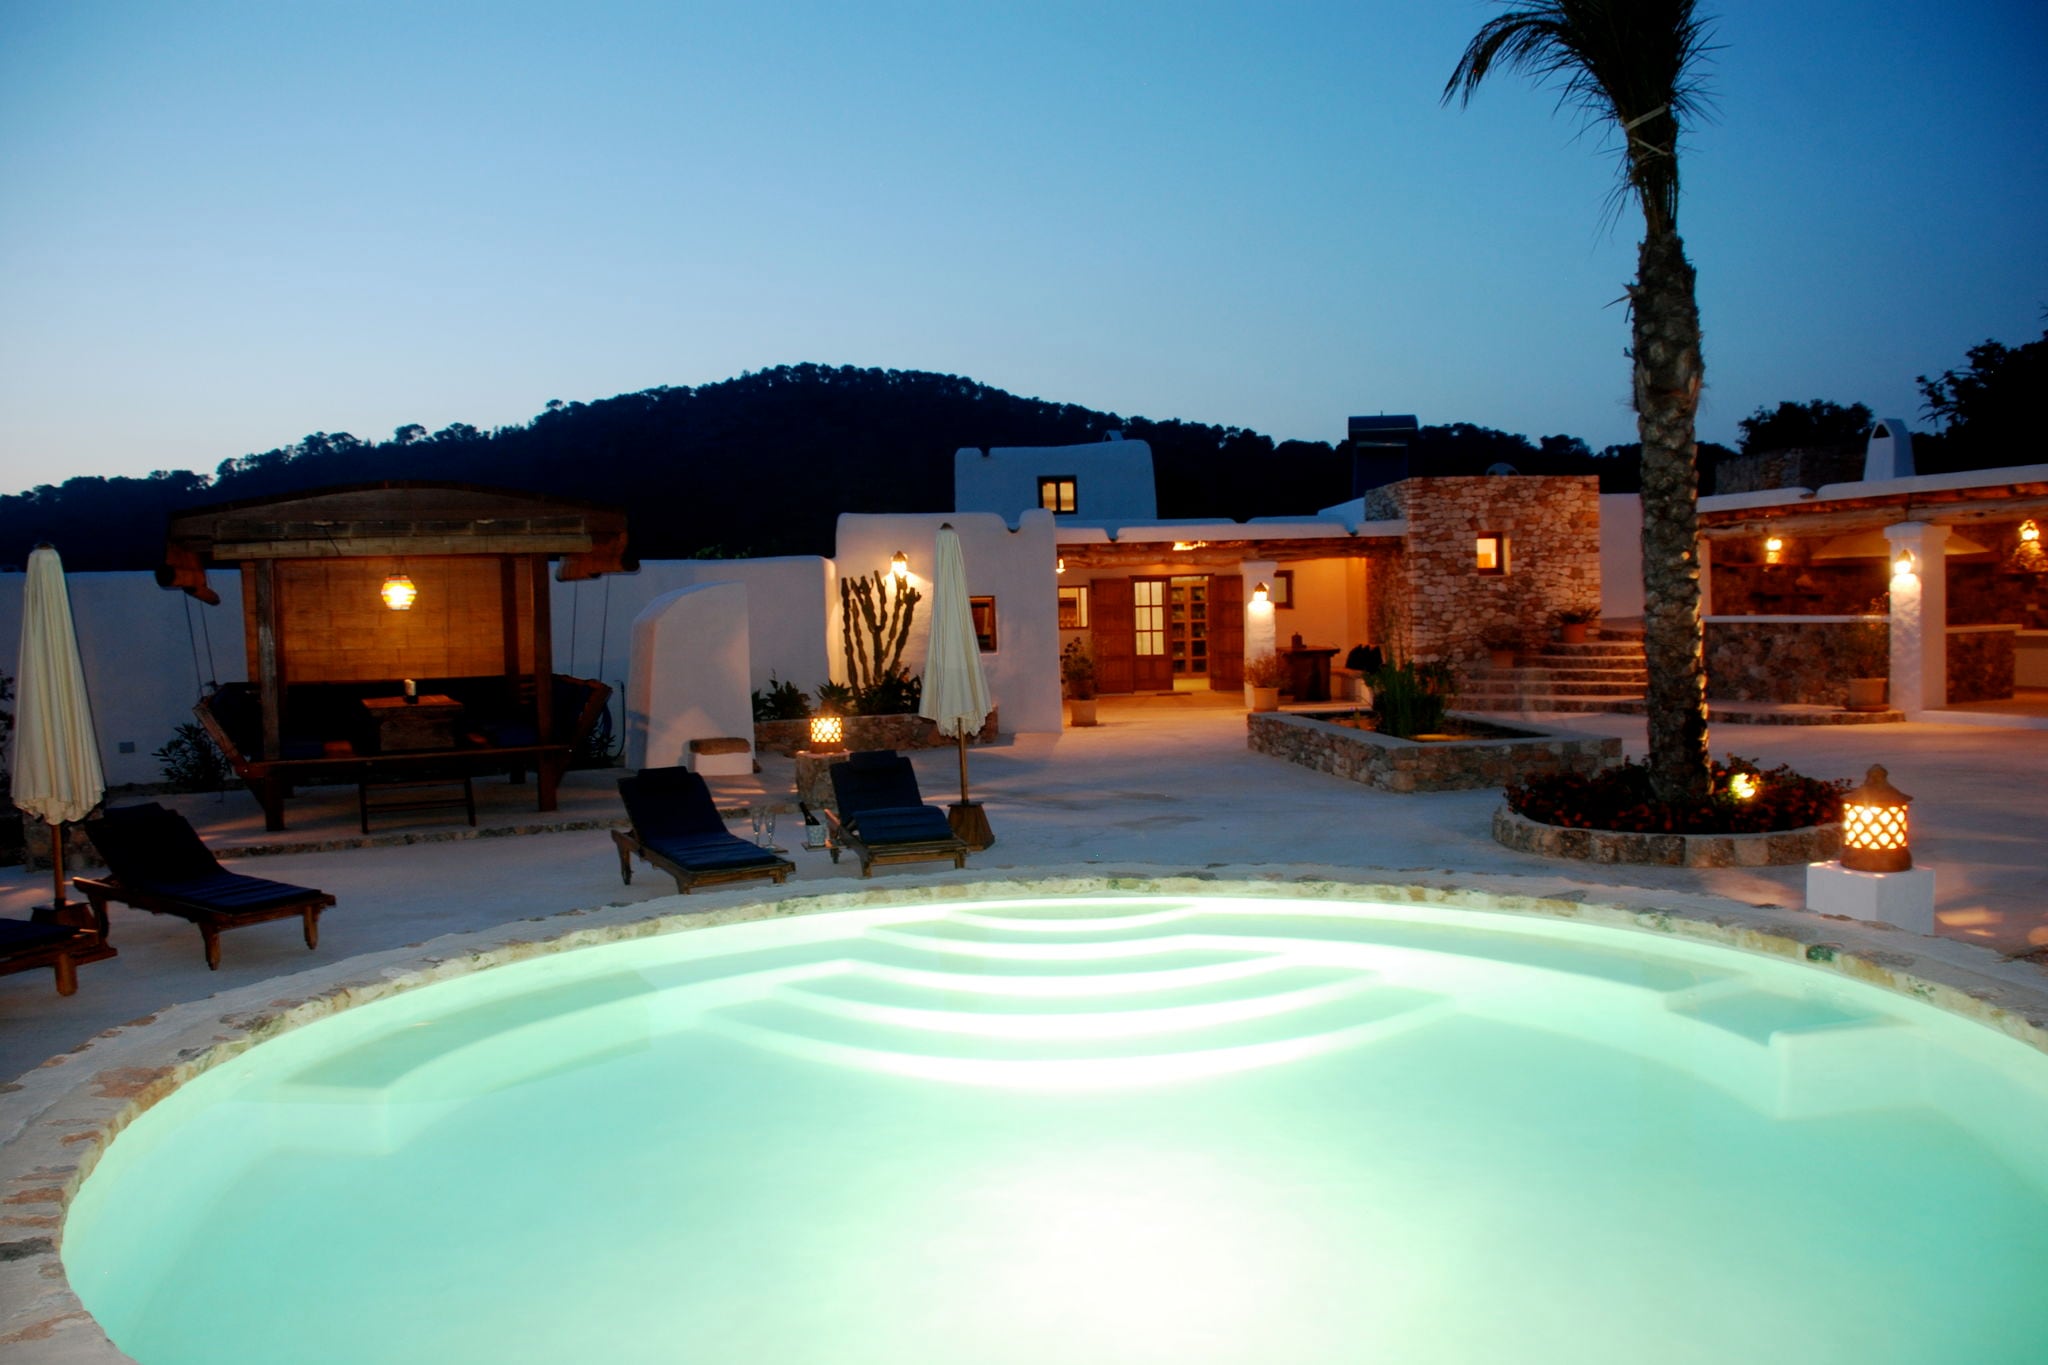 Bijzonder vakantiehuis in San José met tuin en zwembad